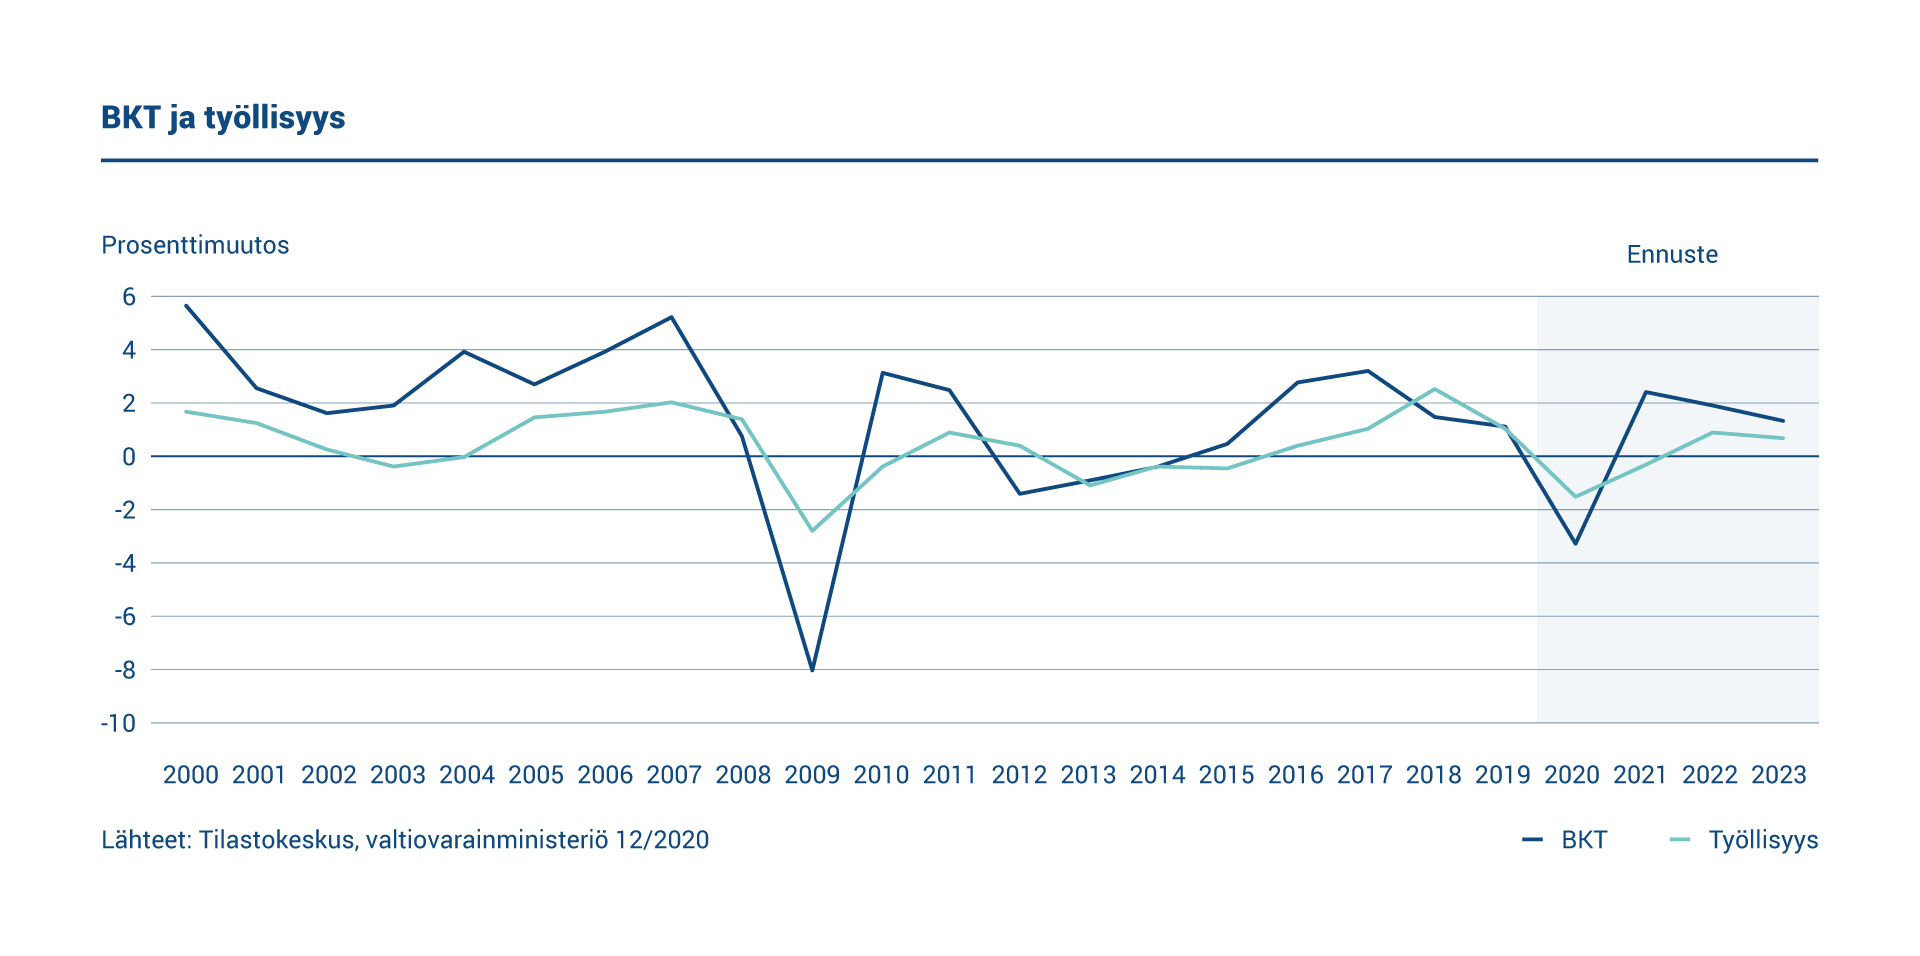 Kaaviossa esitetään tietoja Suomen bruttokansantuotteen ja työllisyyden vuotuisista muutoksista. Bruttokansantuote ja työllisyysaste laskivat vuonna 2020.